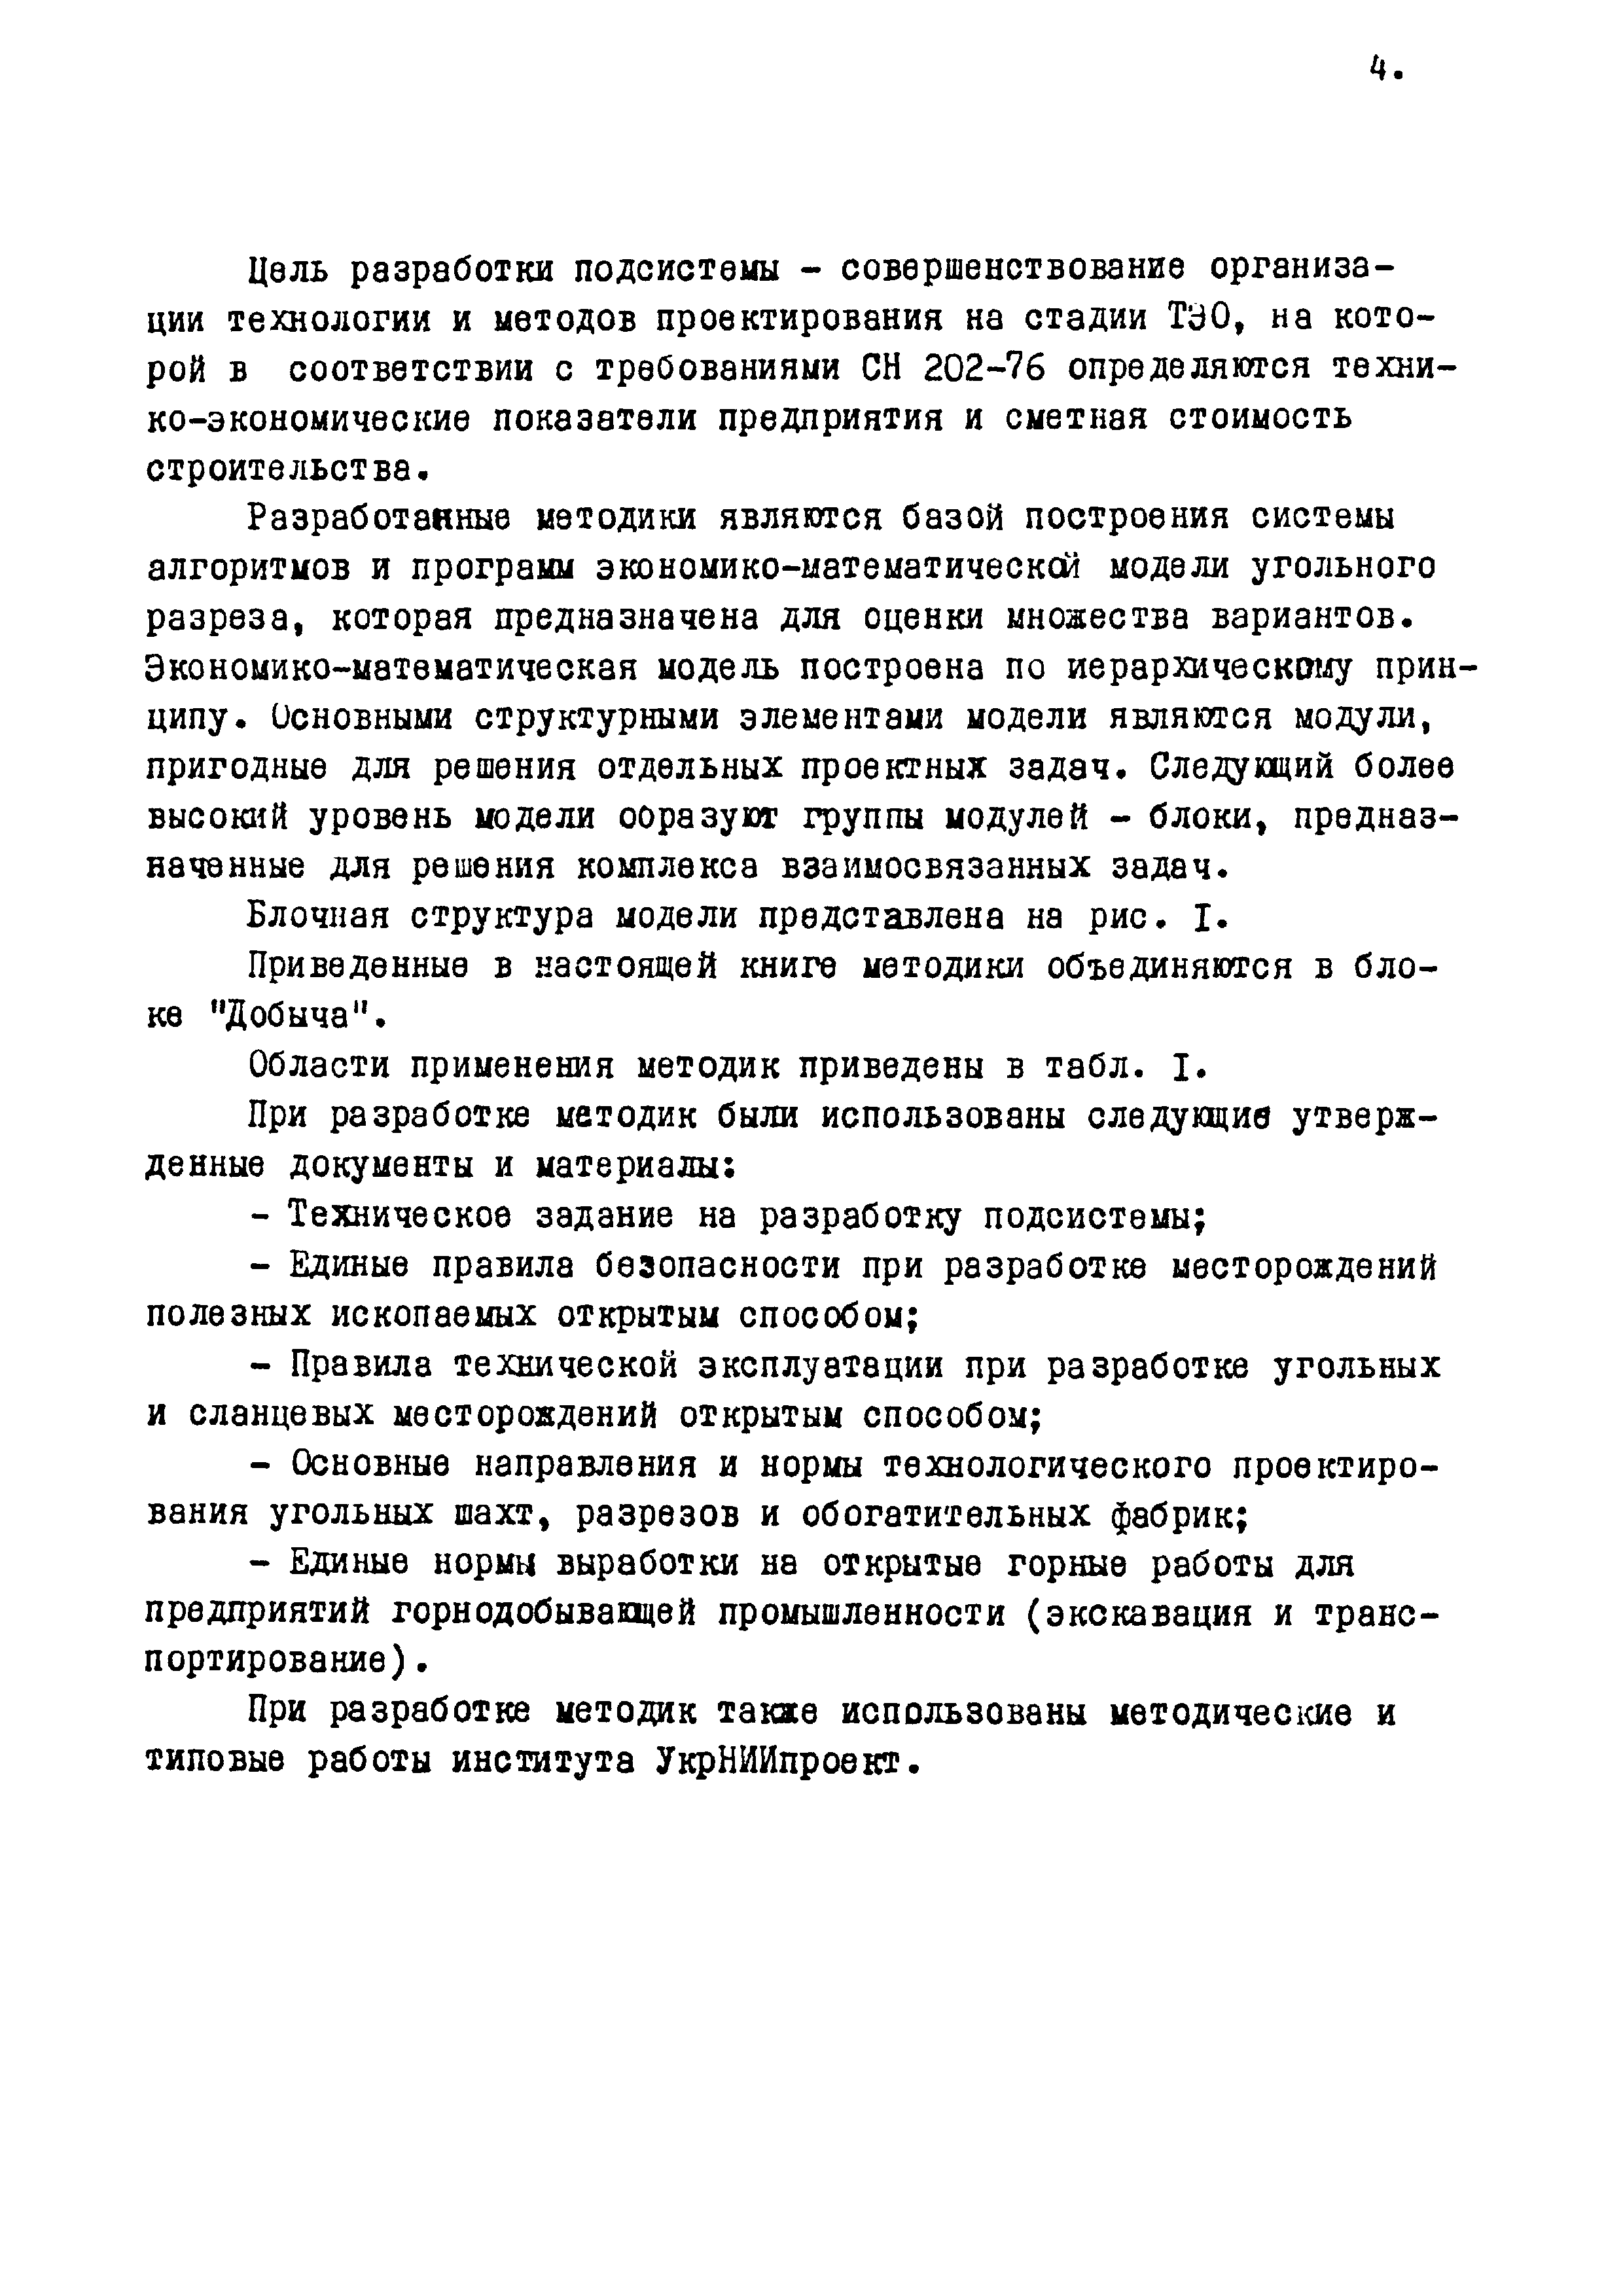 ВОМ 79-4р